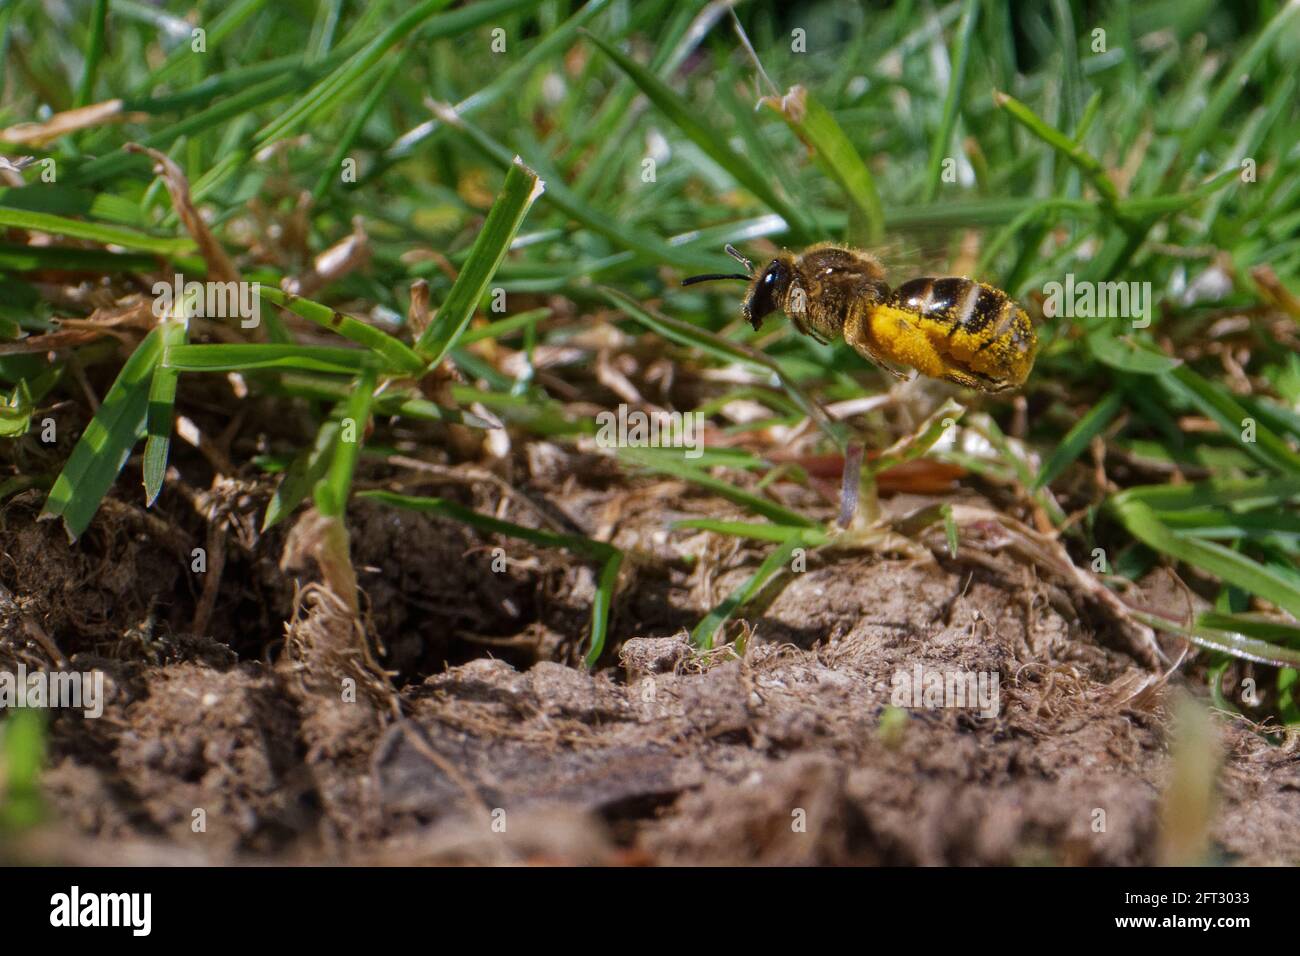 Ape comune di solco / ape snella mineraria (Lasioglossum calceatum) che vola di nuovo al suo burrone nido in un prato da giardino con polline per le sue cellule di covata, Regno Unito. Foto Stock